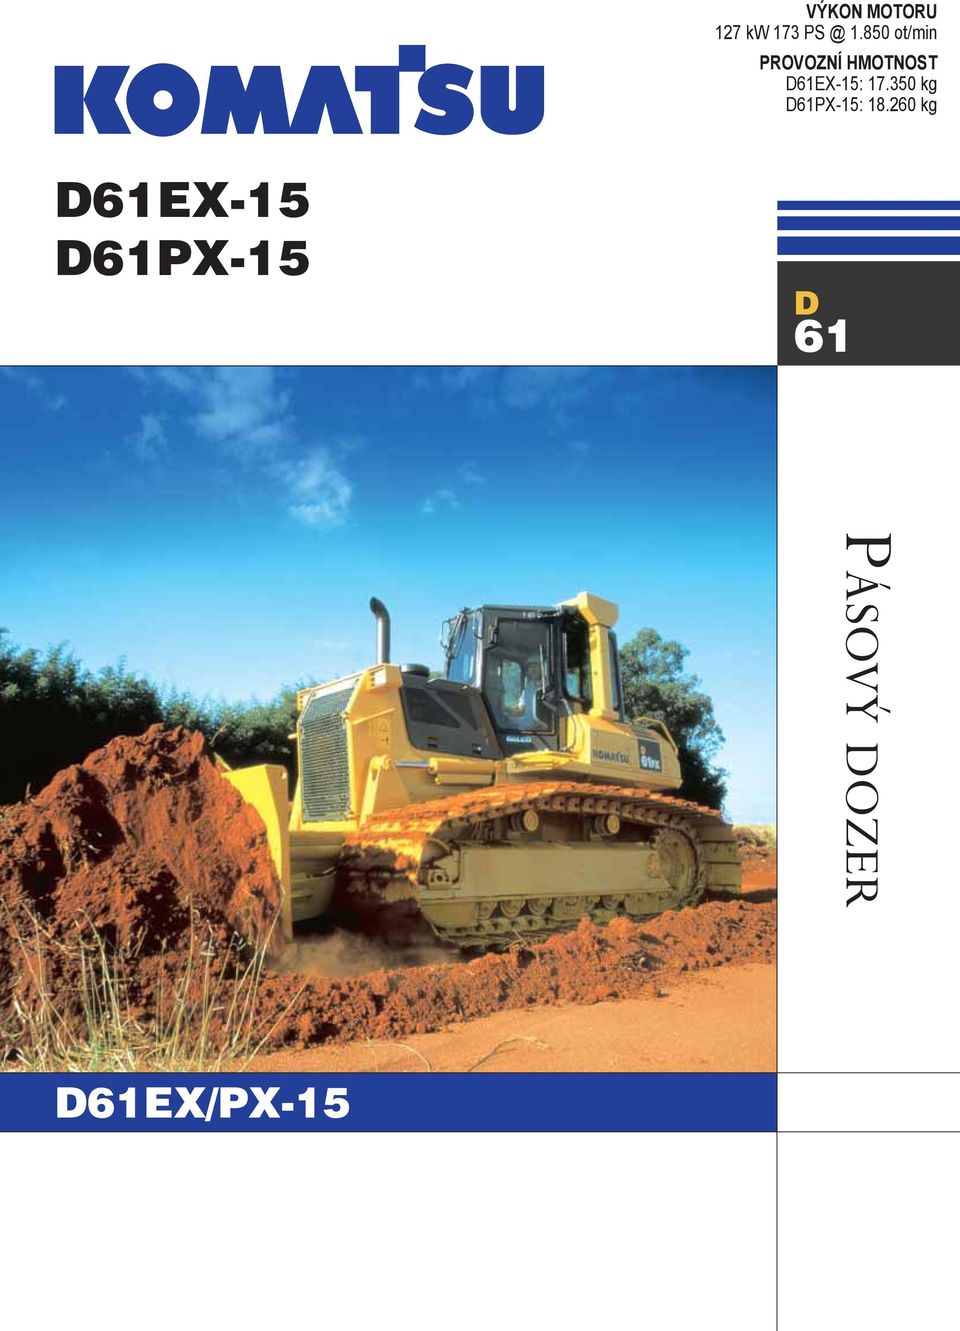 D61EX-15: 17.350 kg D61PX-15: 18.